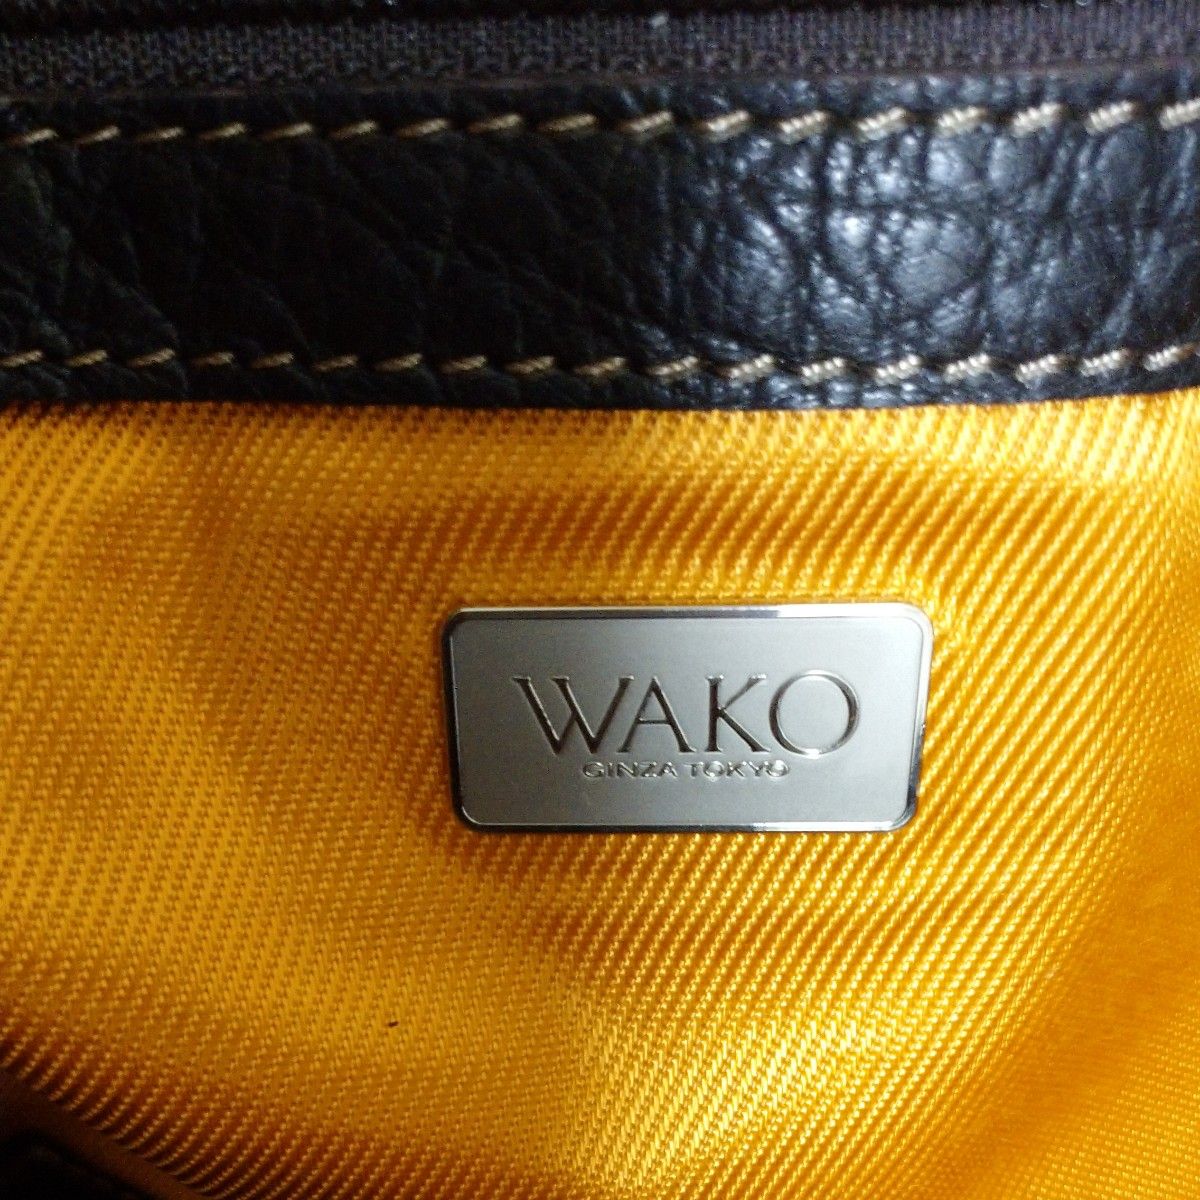 和光 銀座 WAKO GINZA TOKYO ショルダートートバッグ